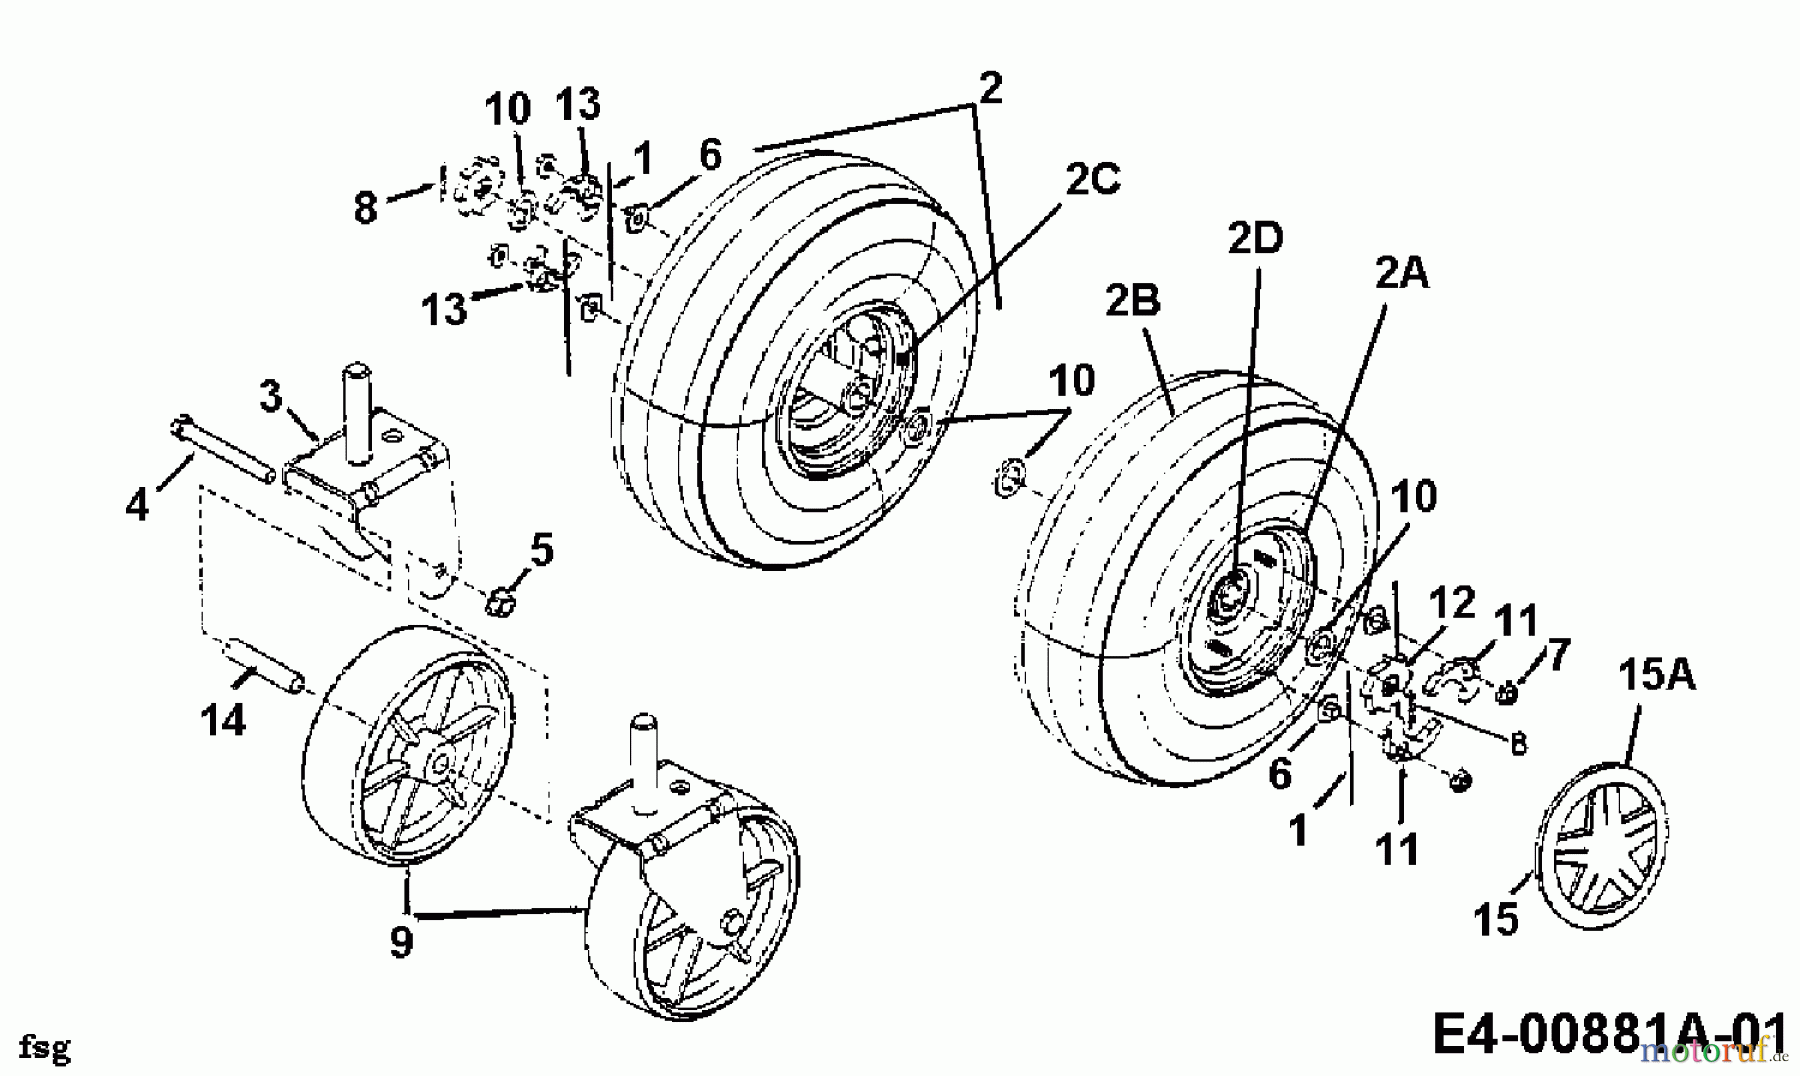  Gutbrod Leaf blower, Blower vac 203 B 24A-203B604  (1999) Wheels